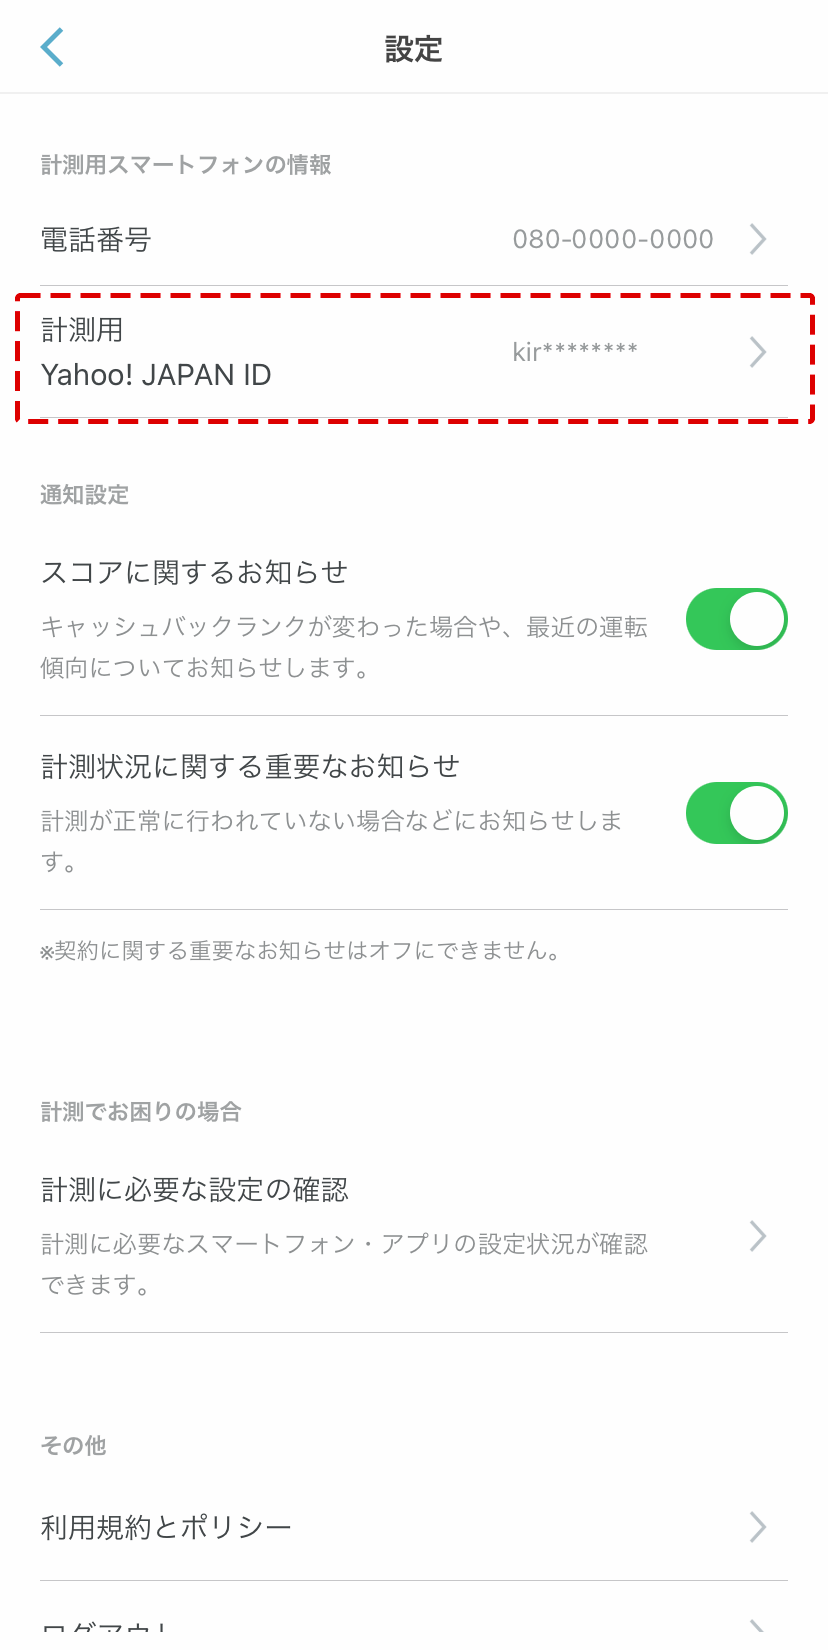  [計測用Yahoo! JAPAN ID]に表示されています。